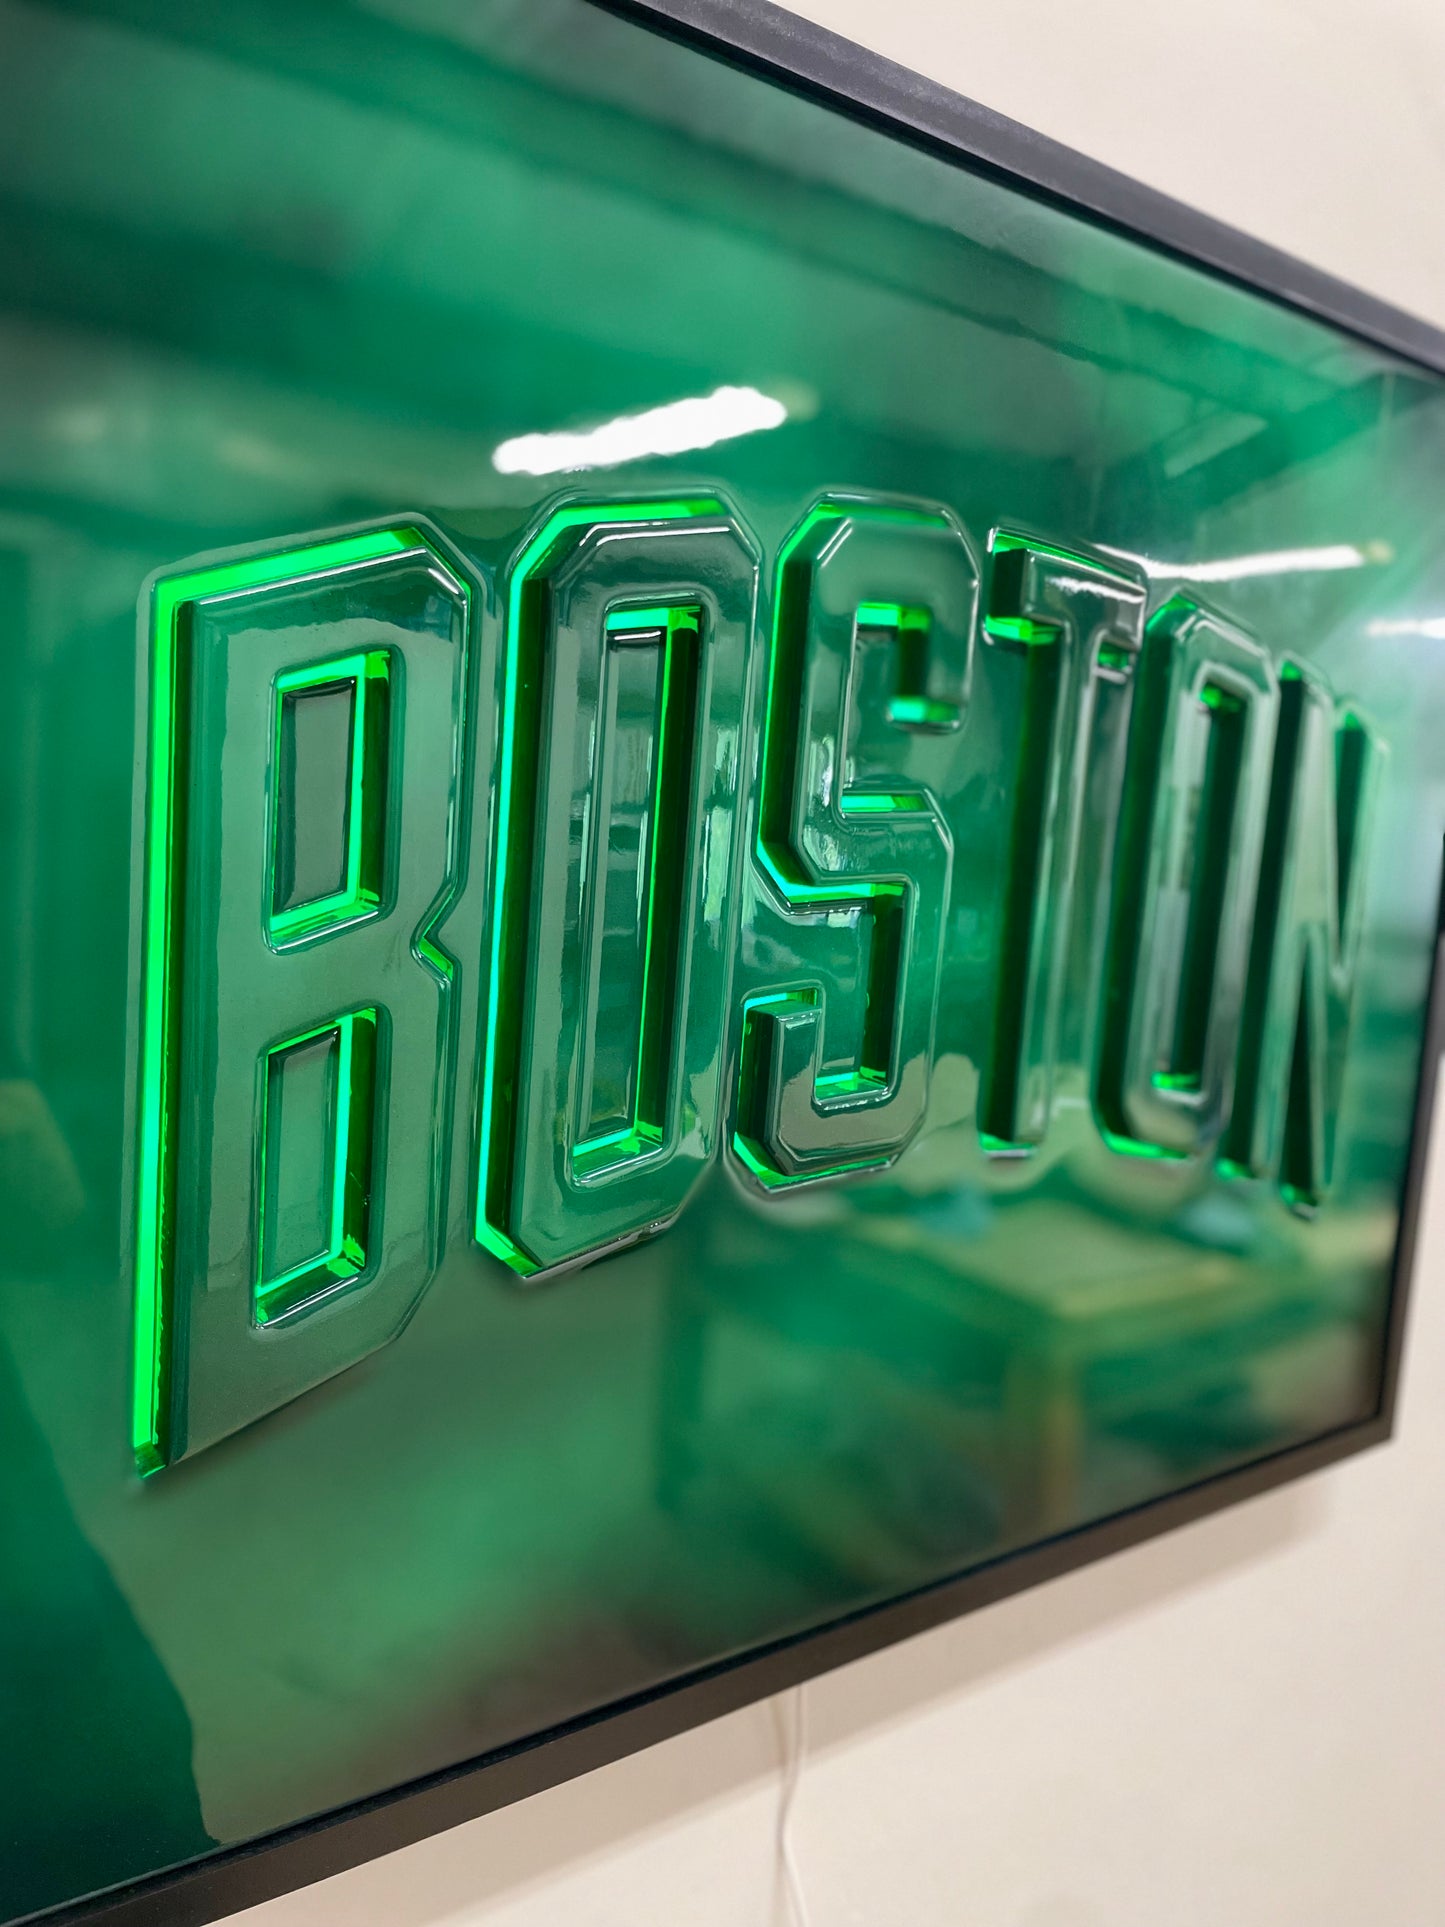 Framed Boston LED sign